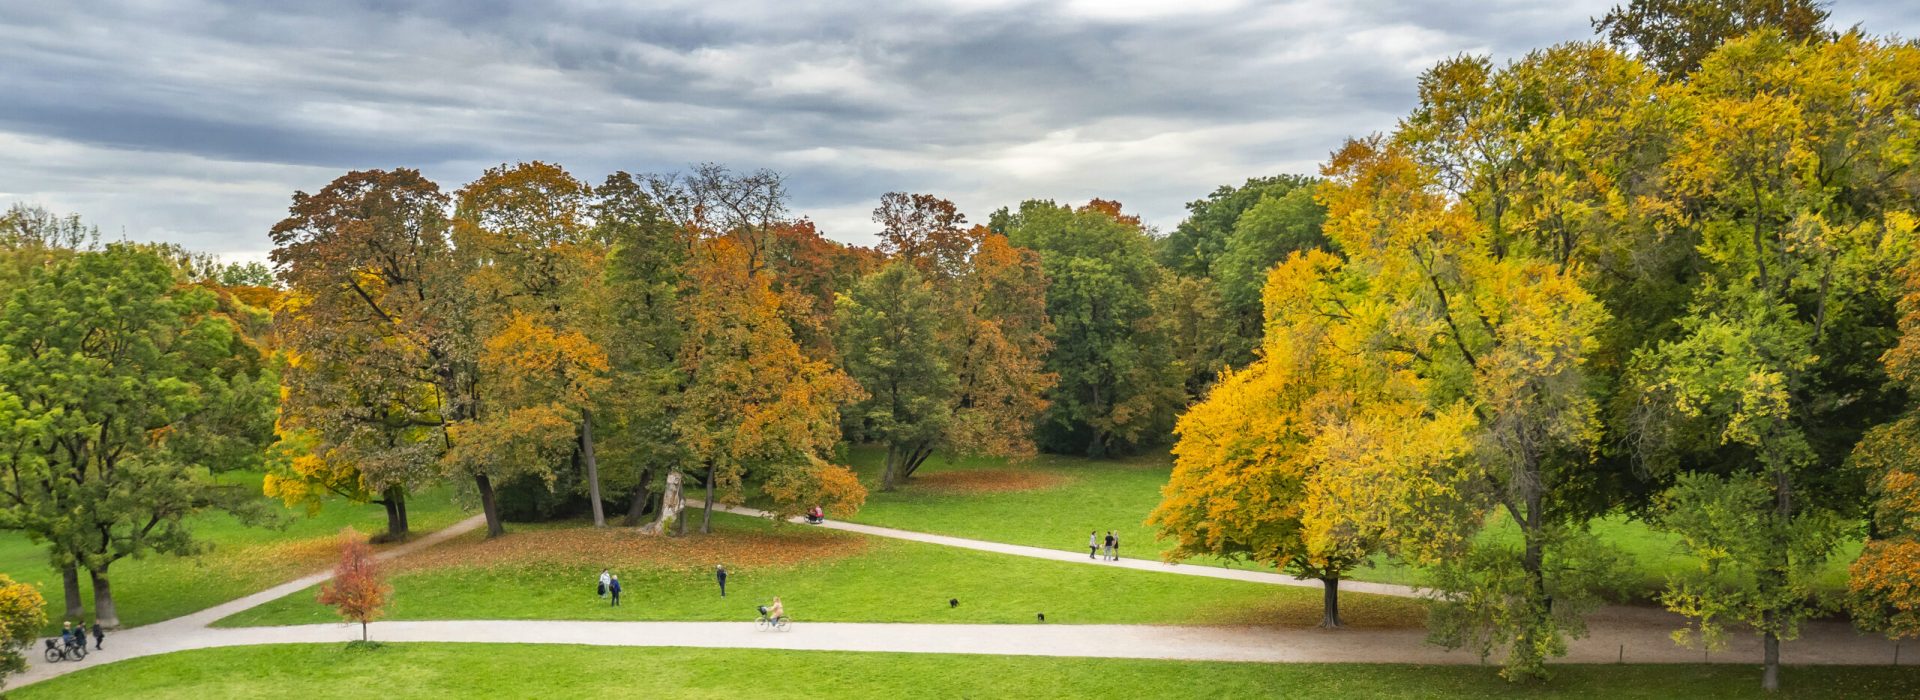 Englischer Garten Public Park, Munich, Bavaria, Germany, Europe